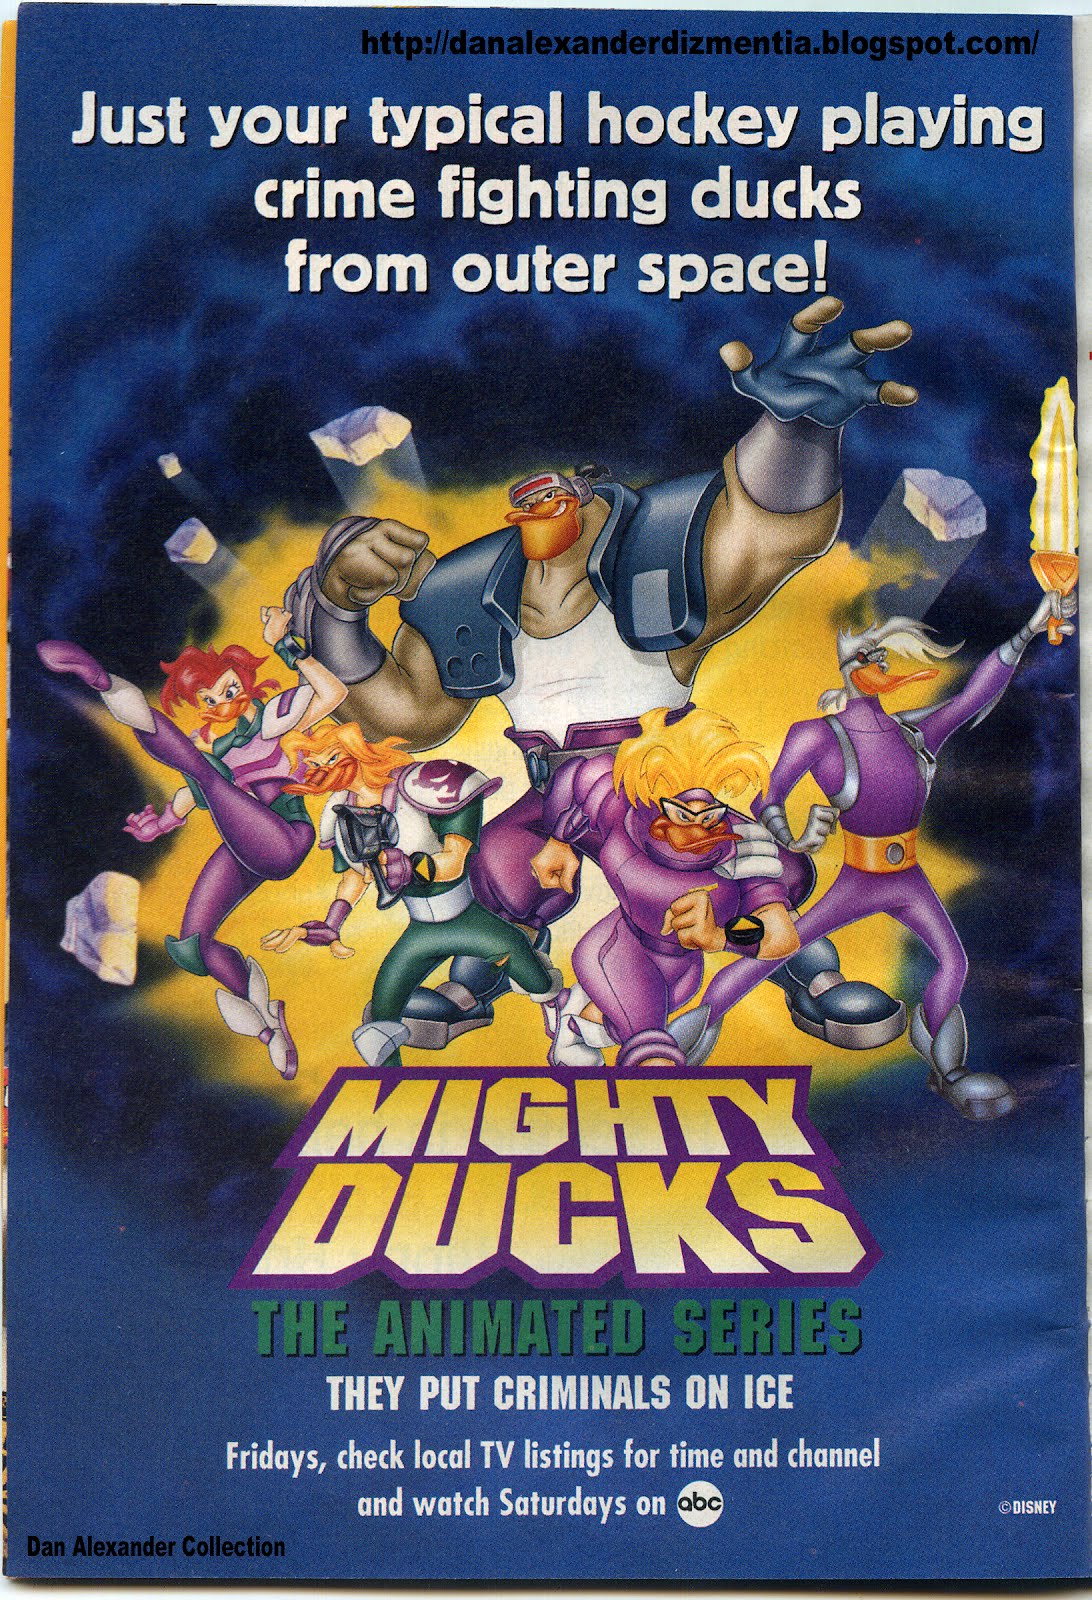 IMAGES OF THE DUCKS HOCKEY MASCOTS, Mighty Ducks Cartoon